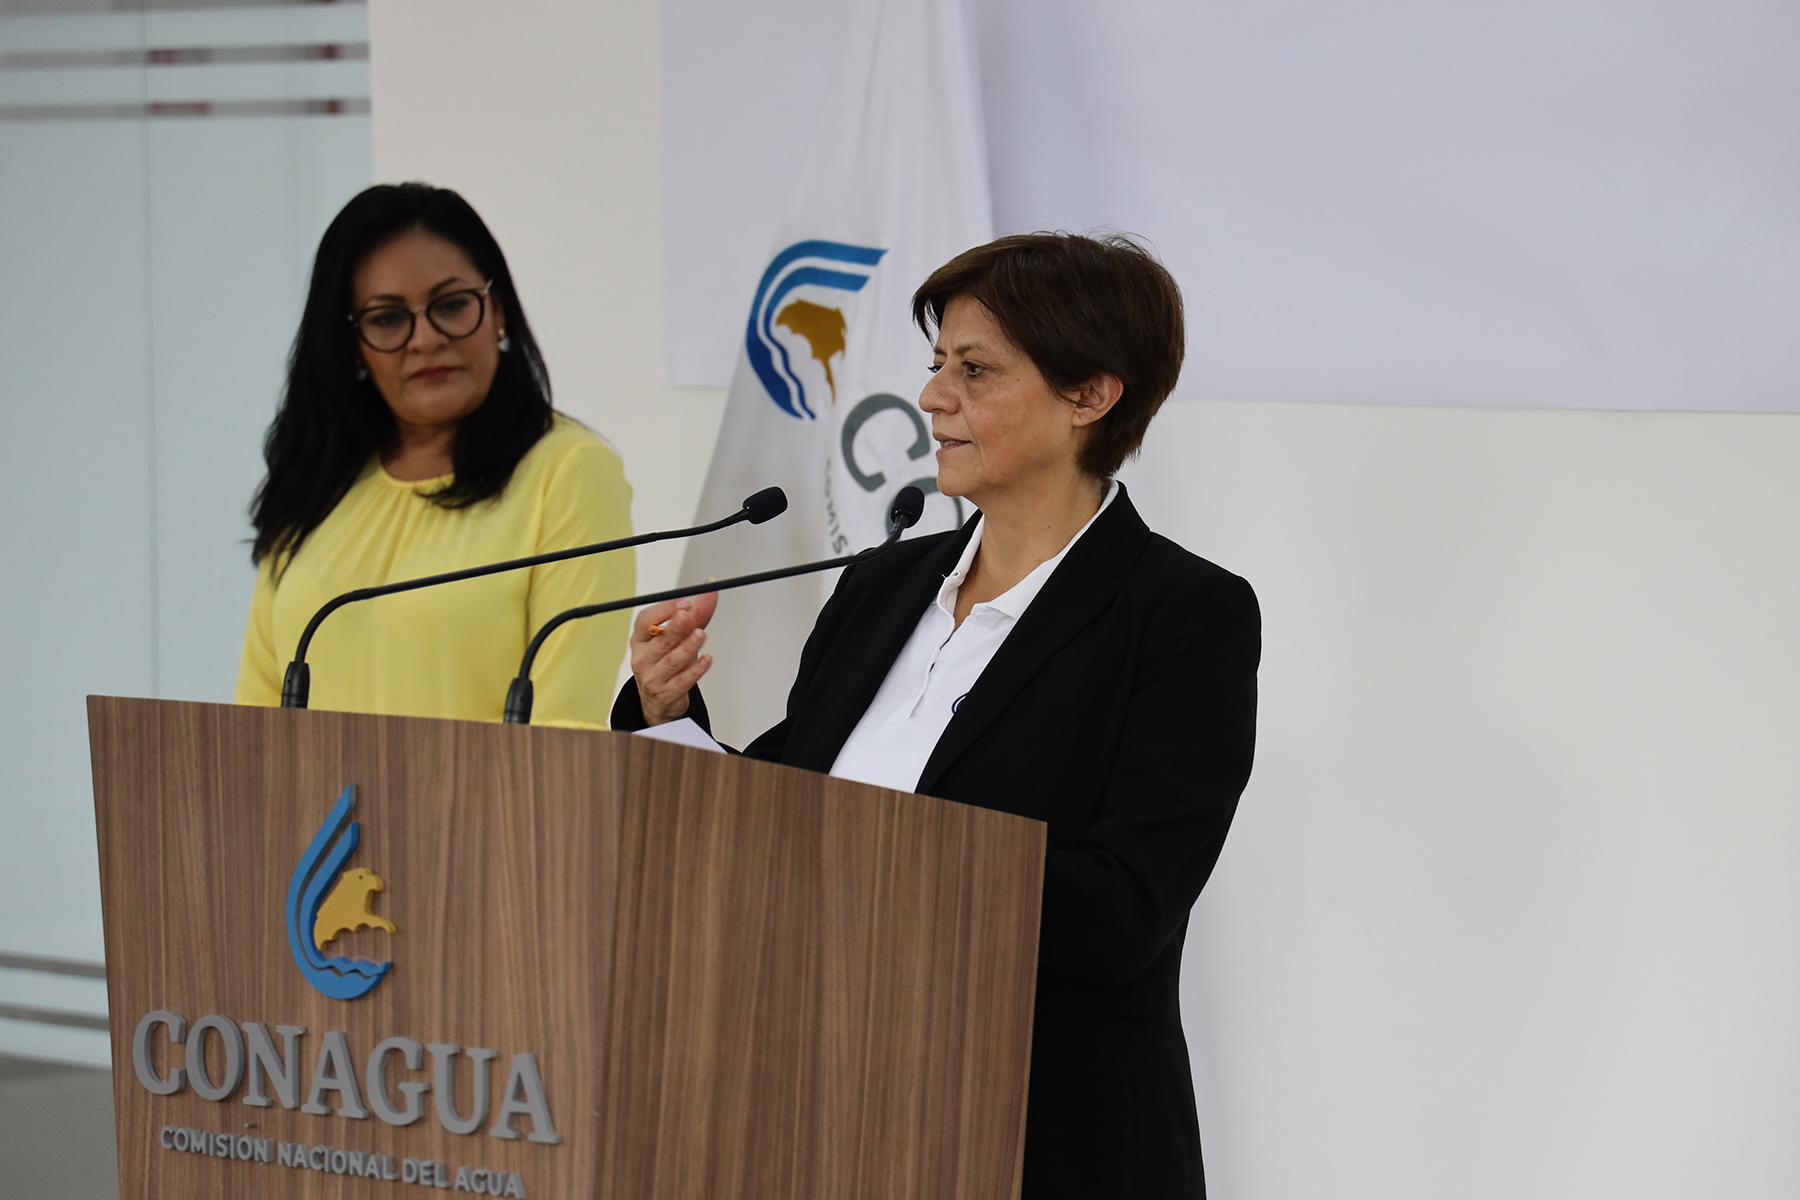 Conagua implementa un plan de acción para contribuir al abastecimiento de agua en hospitales prioritarios en ciudades y comunidades rurales, así como seguir con el manejo del agua en la agricultura para mantener la seguridad alimentaria, informó Blanca Jiménez Cisneros.